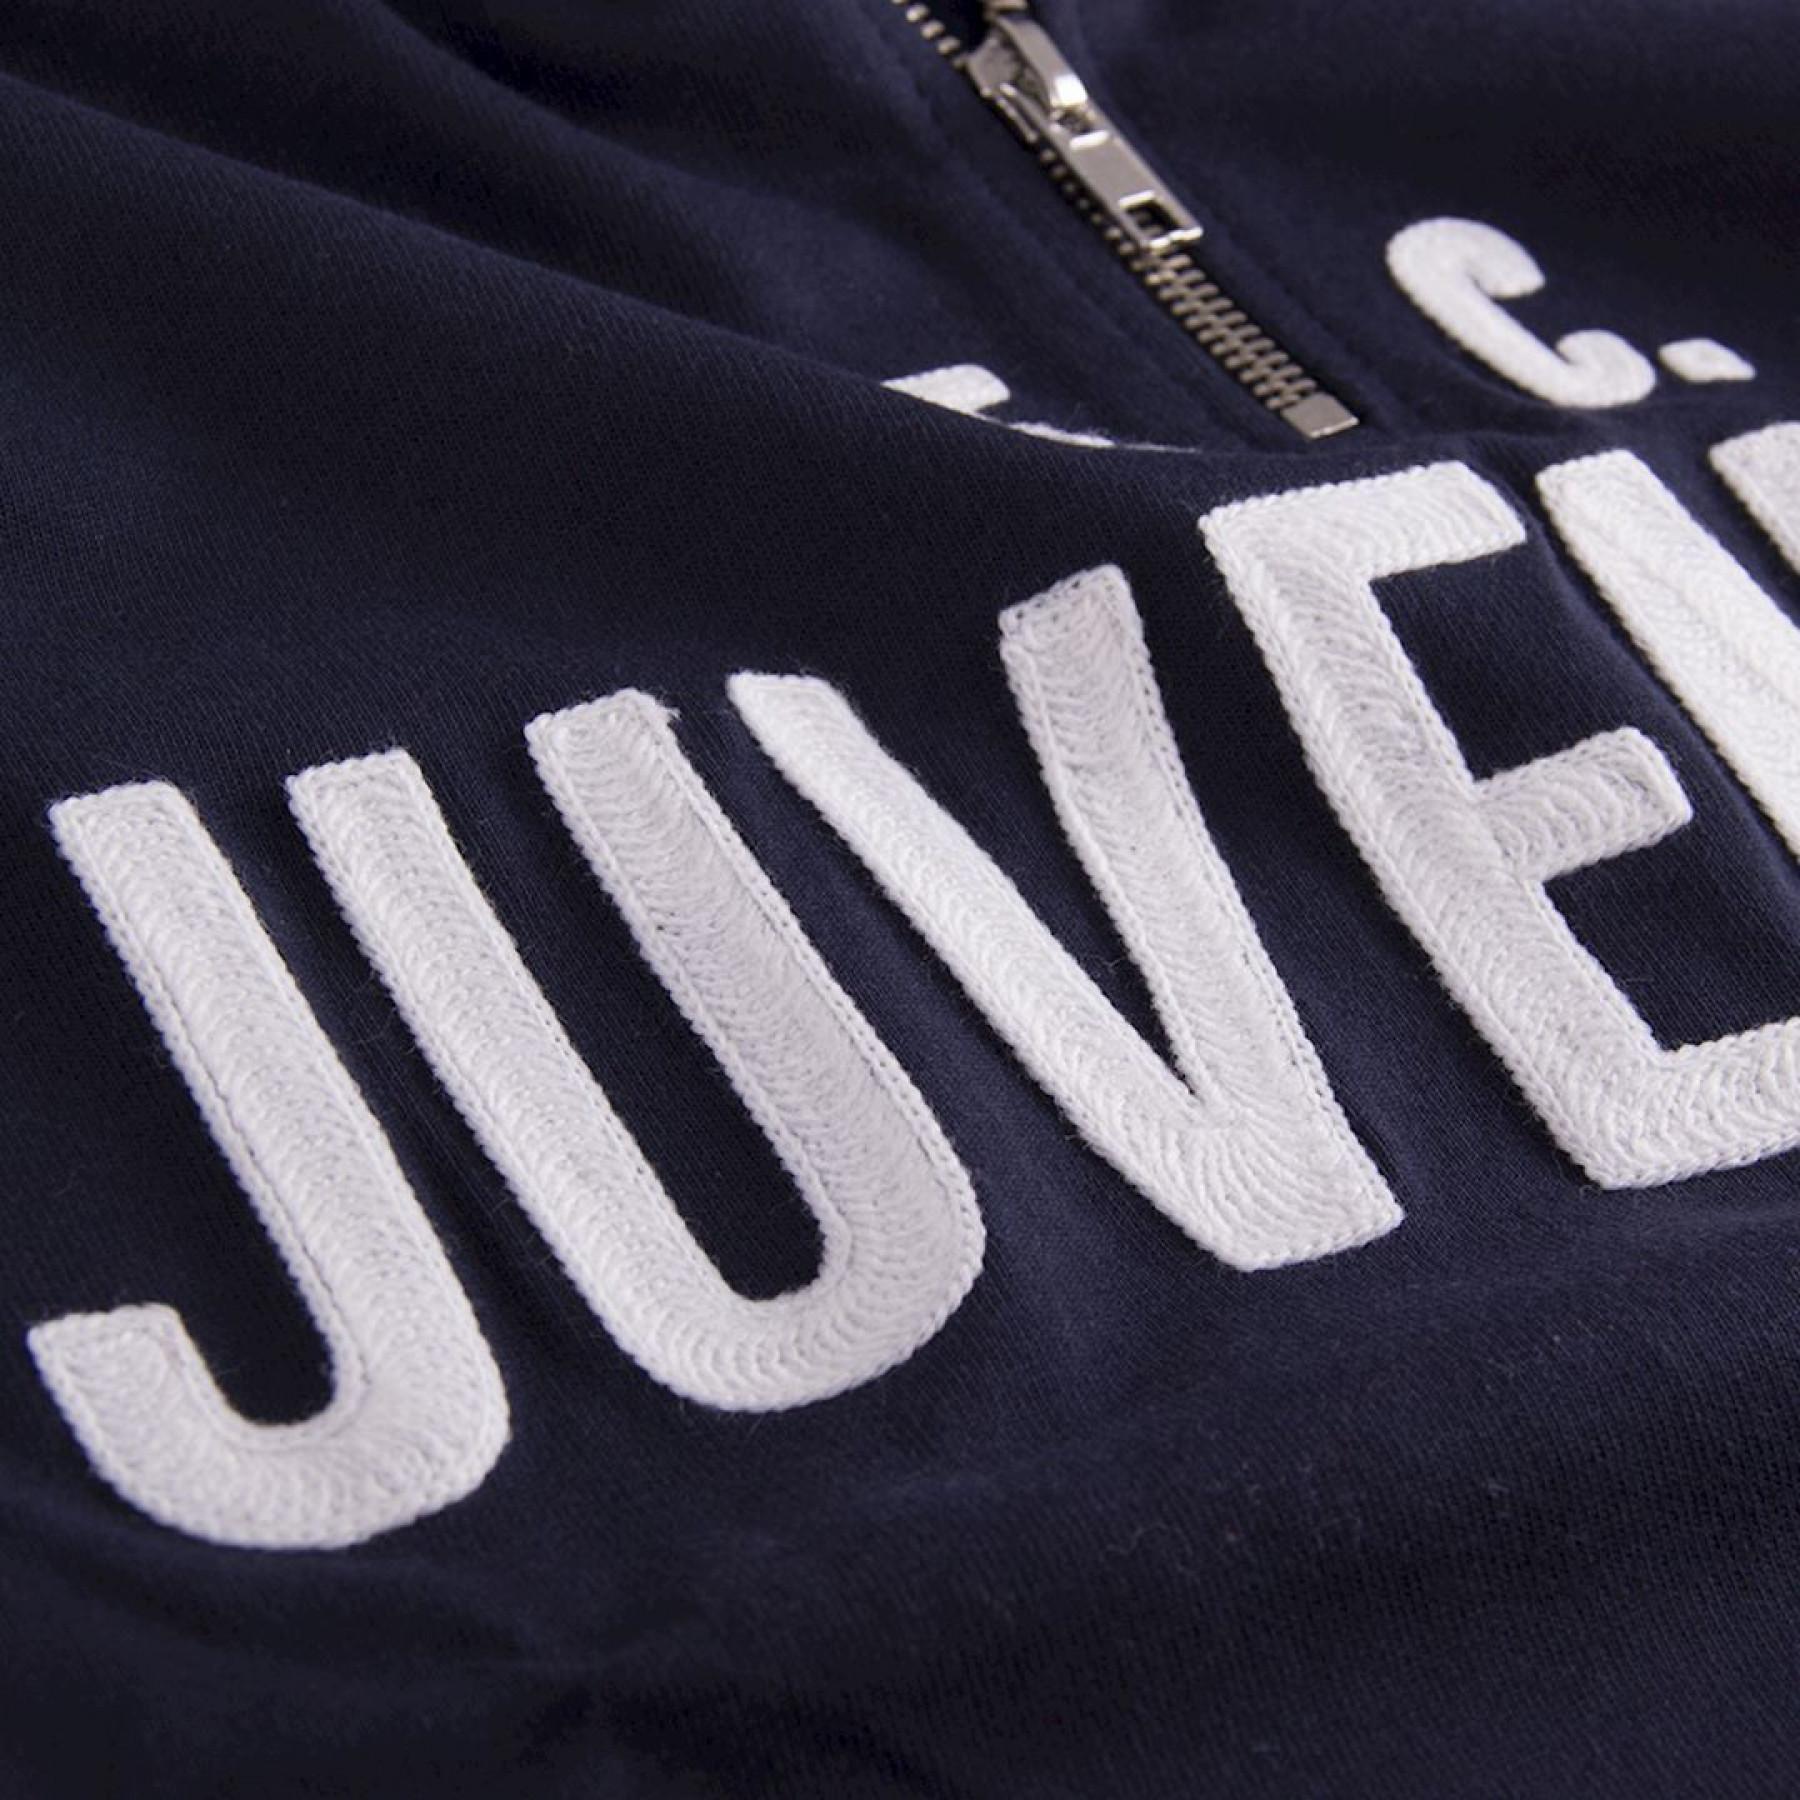 Chaqueta de chándal Copa Juventus Turin 1974/75